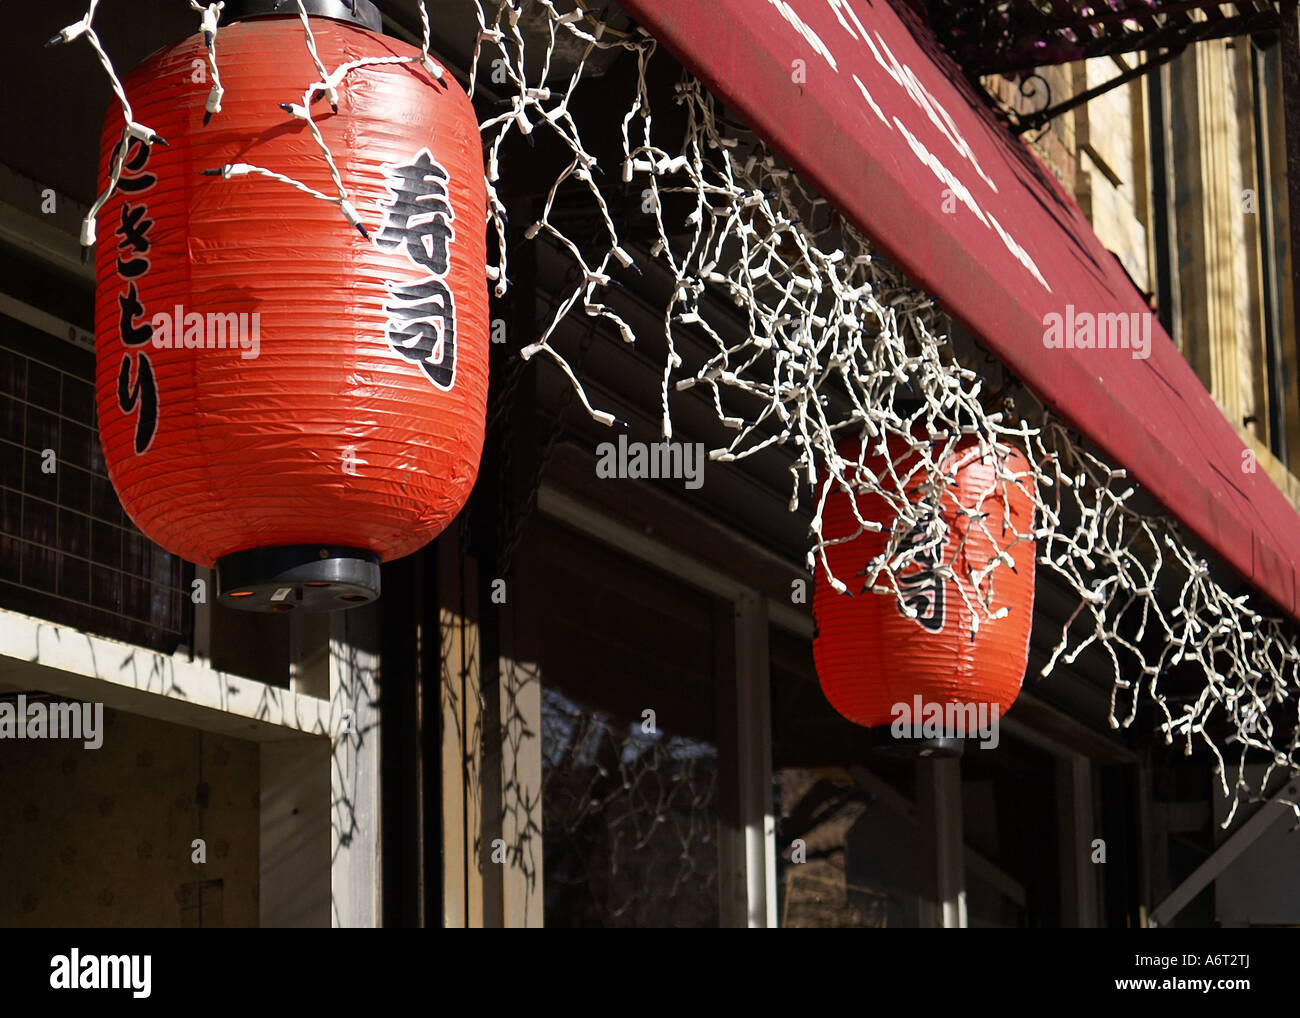 Des lanternes en papier et icicle lights hanging sous un auvent dans le quartier chinois de New York. Banque D'Images